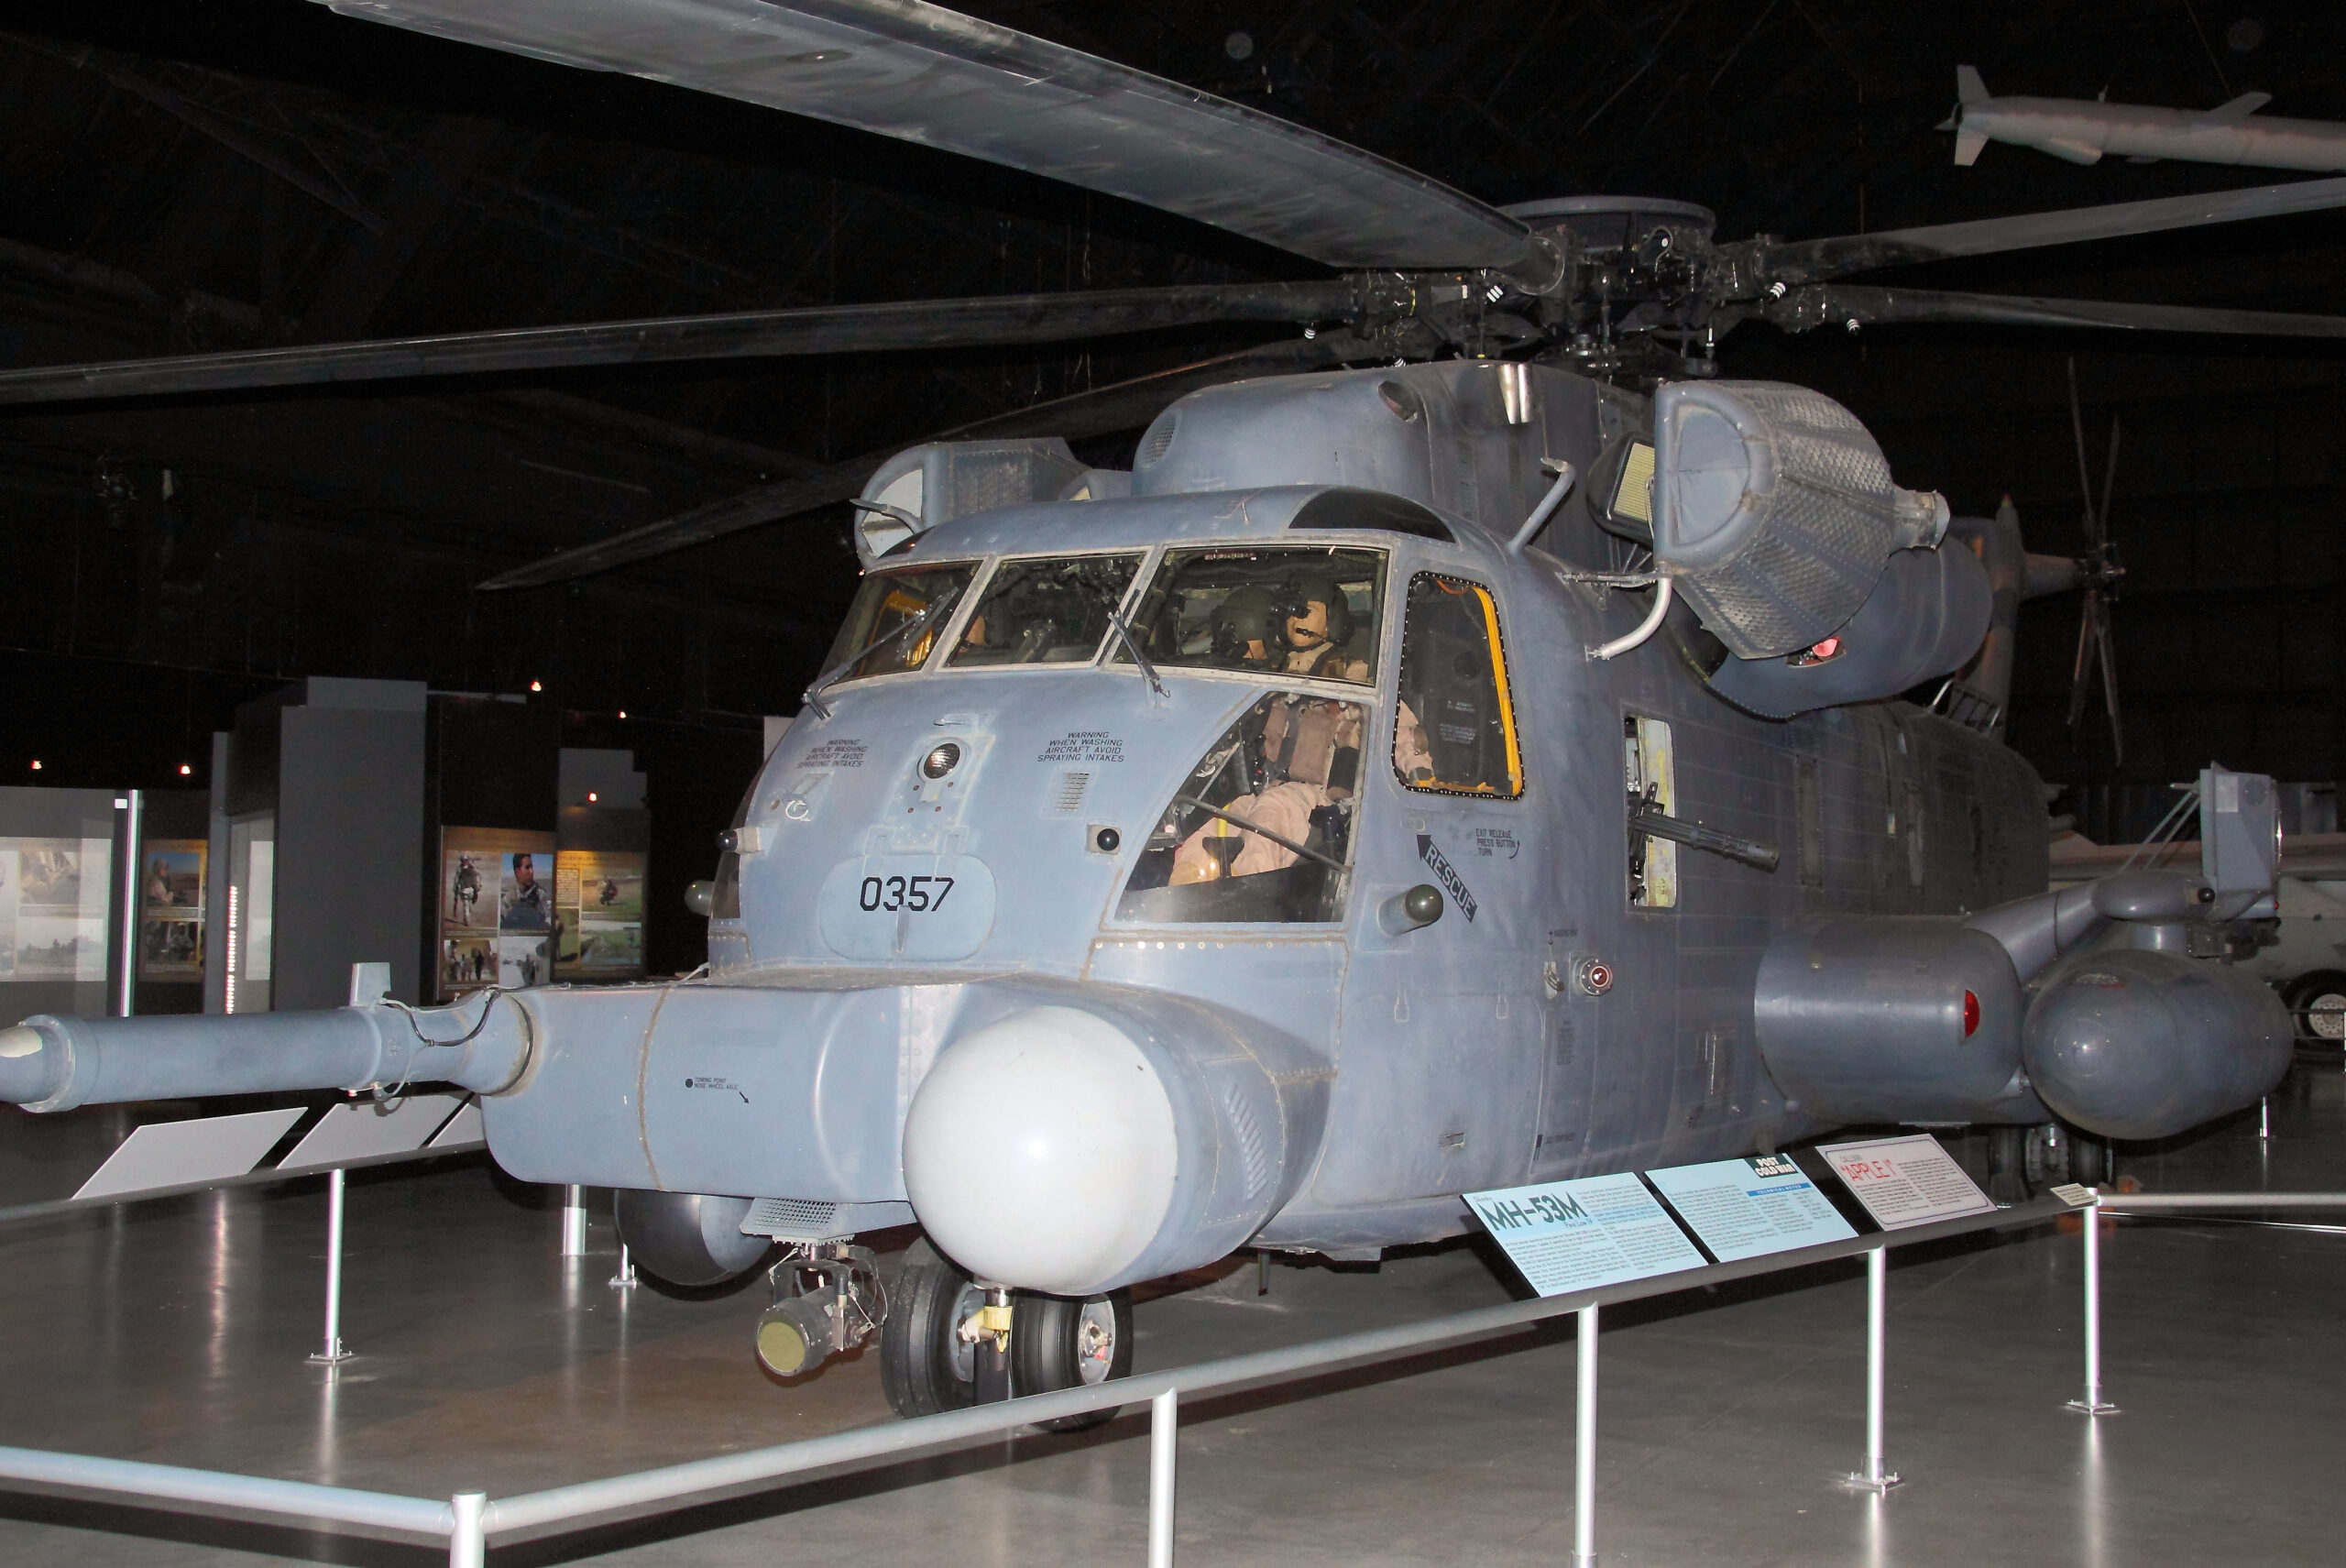 Sikorsky MH-53M Pave Low IV - kampfwertgesteigerter Hubschrauber für nächtliche Tiefangriffe